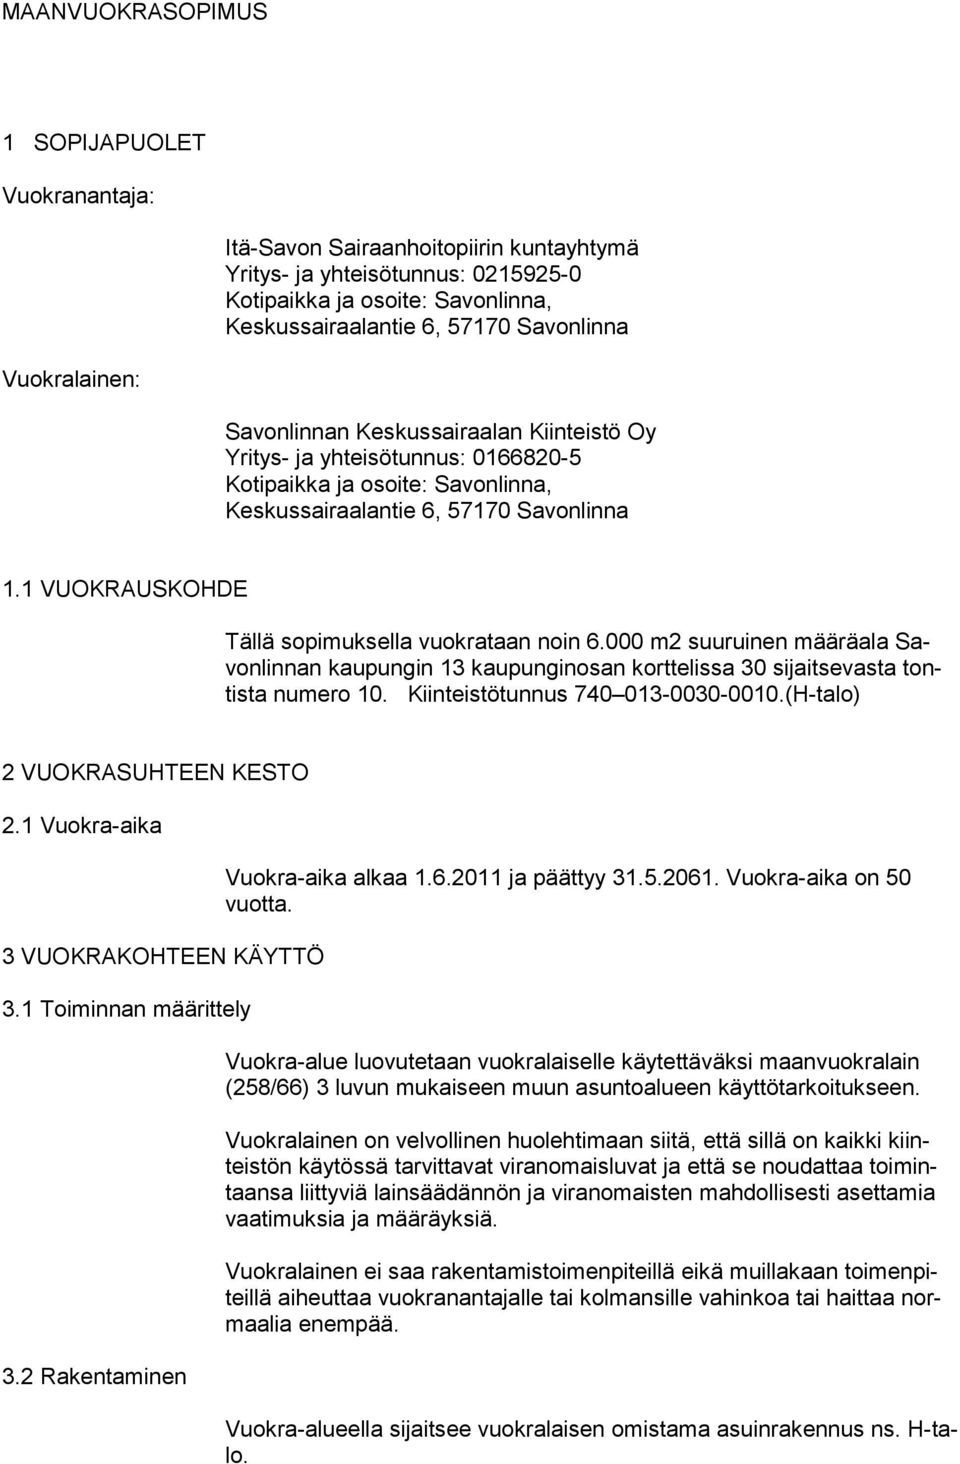 1 VUOKRAUSKOHDE Tällä sopimuksella vuokrataan noin 6.000 m2 suuruinen määräala Savonlinnan kaupungin 13 kaupunginosan korttelissa 30 sijaitsevasta tontista numero 10.